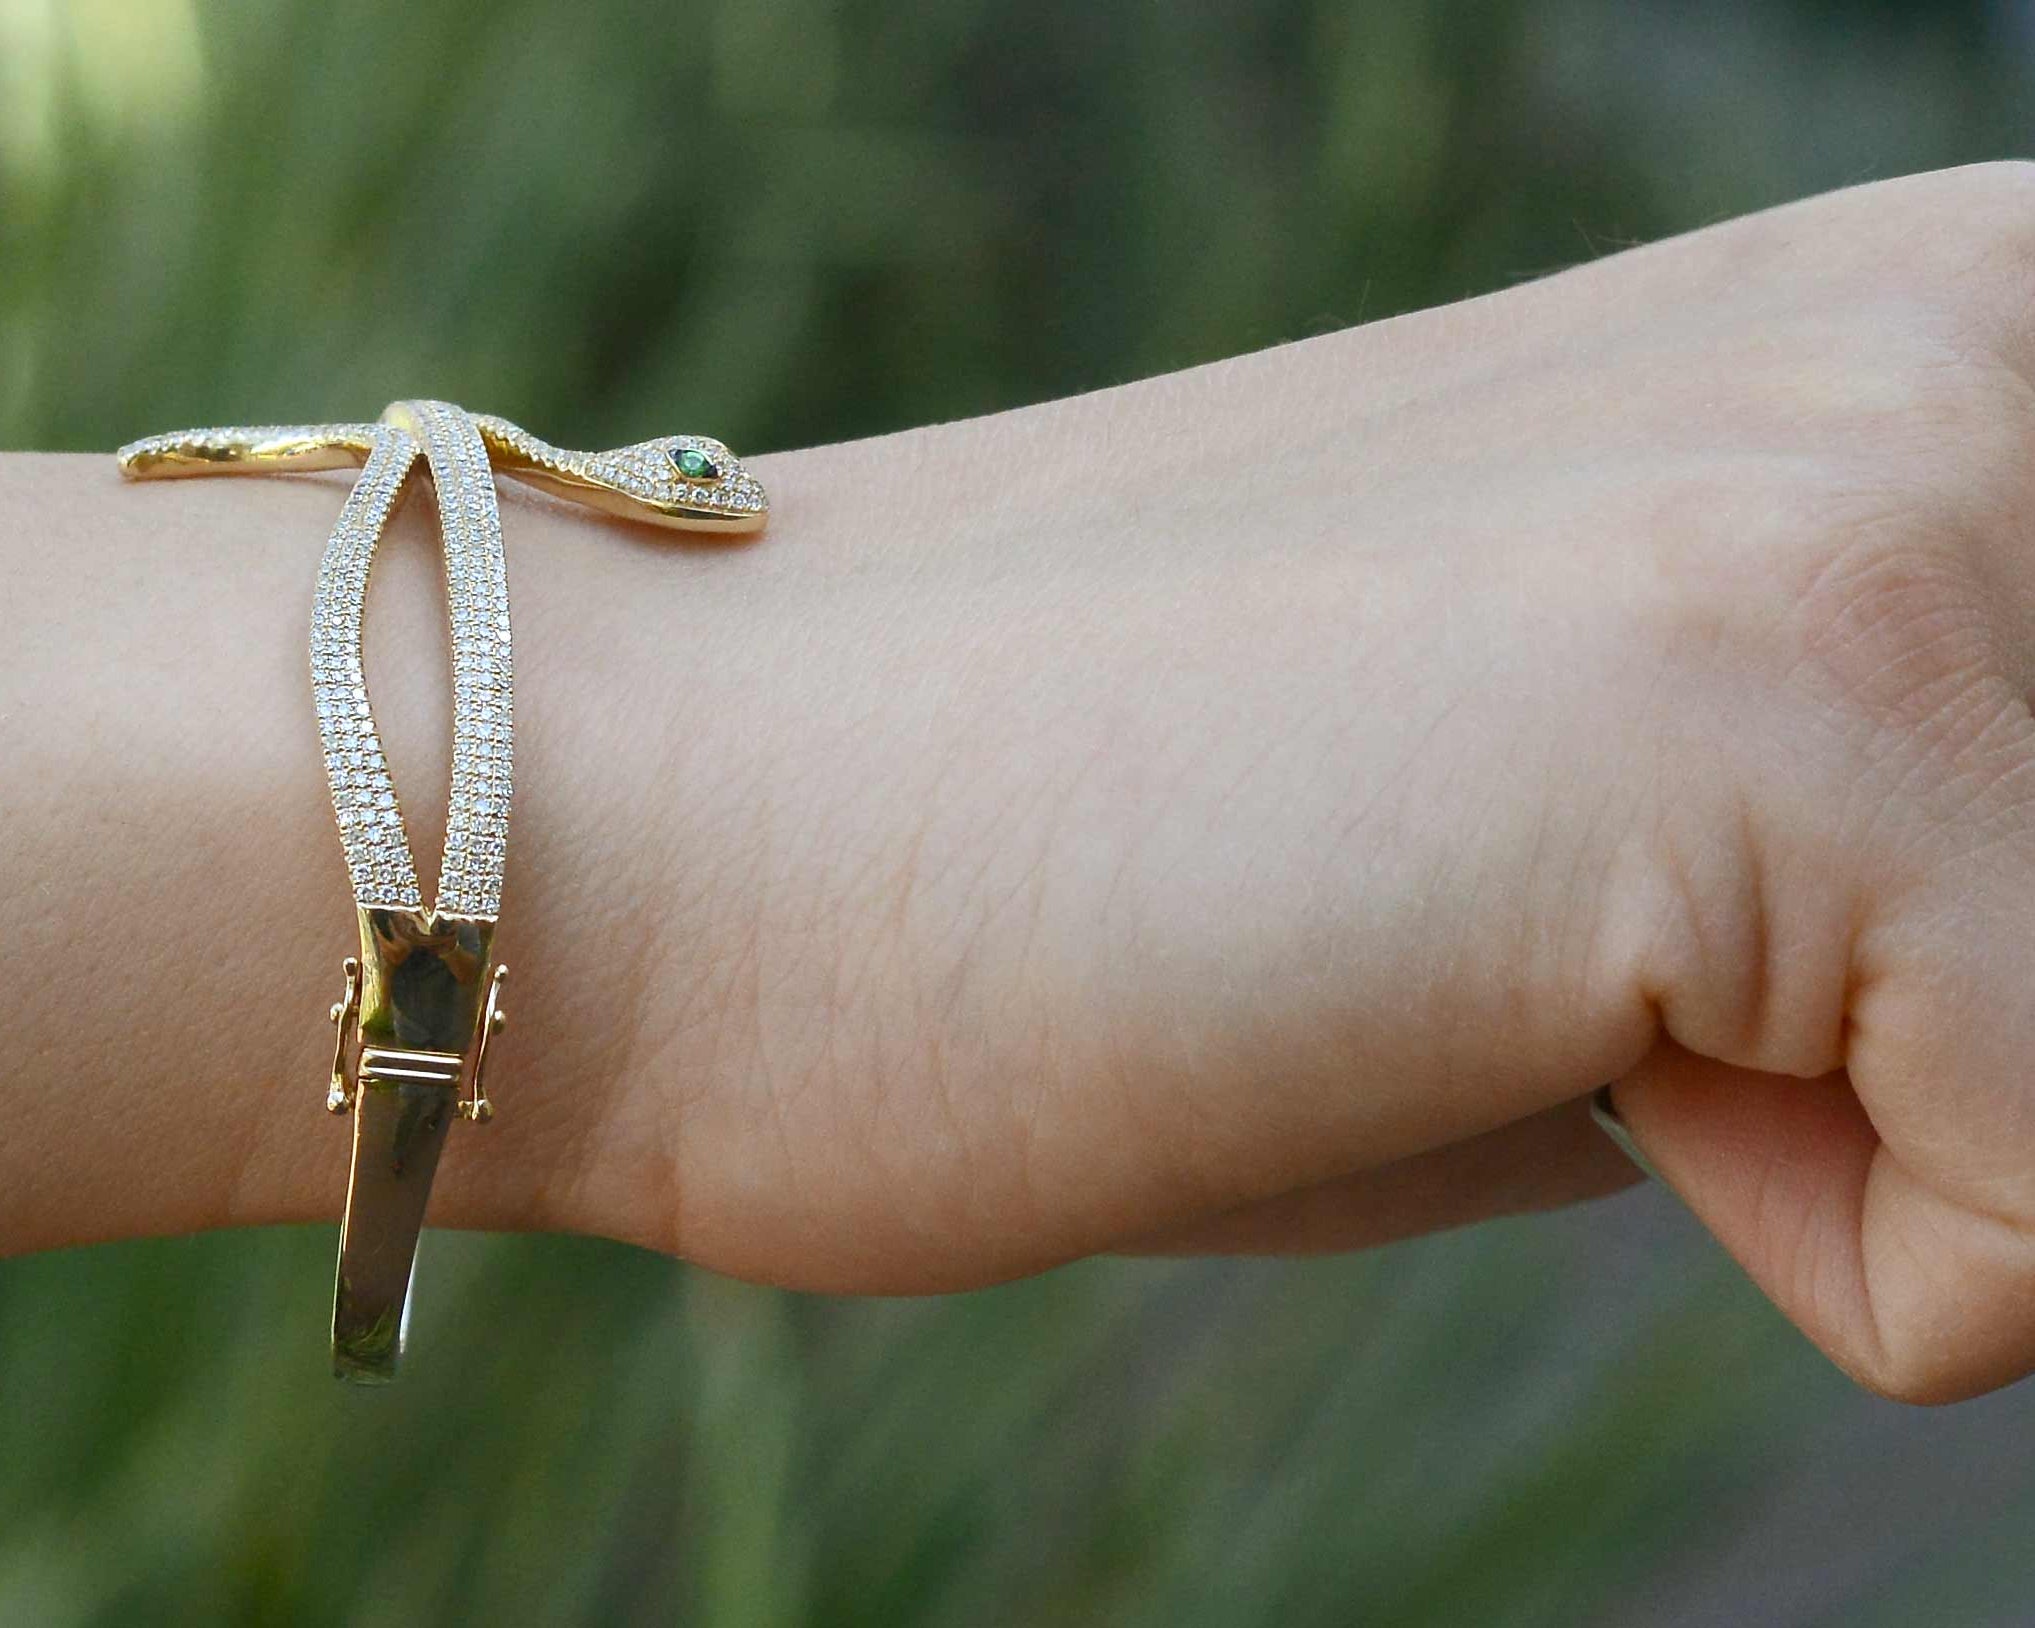 A modern gold snake bracelet with 2 safety clasps.